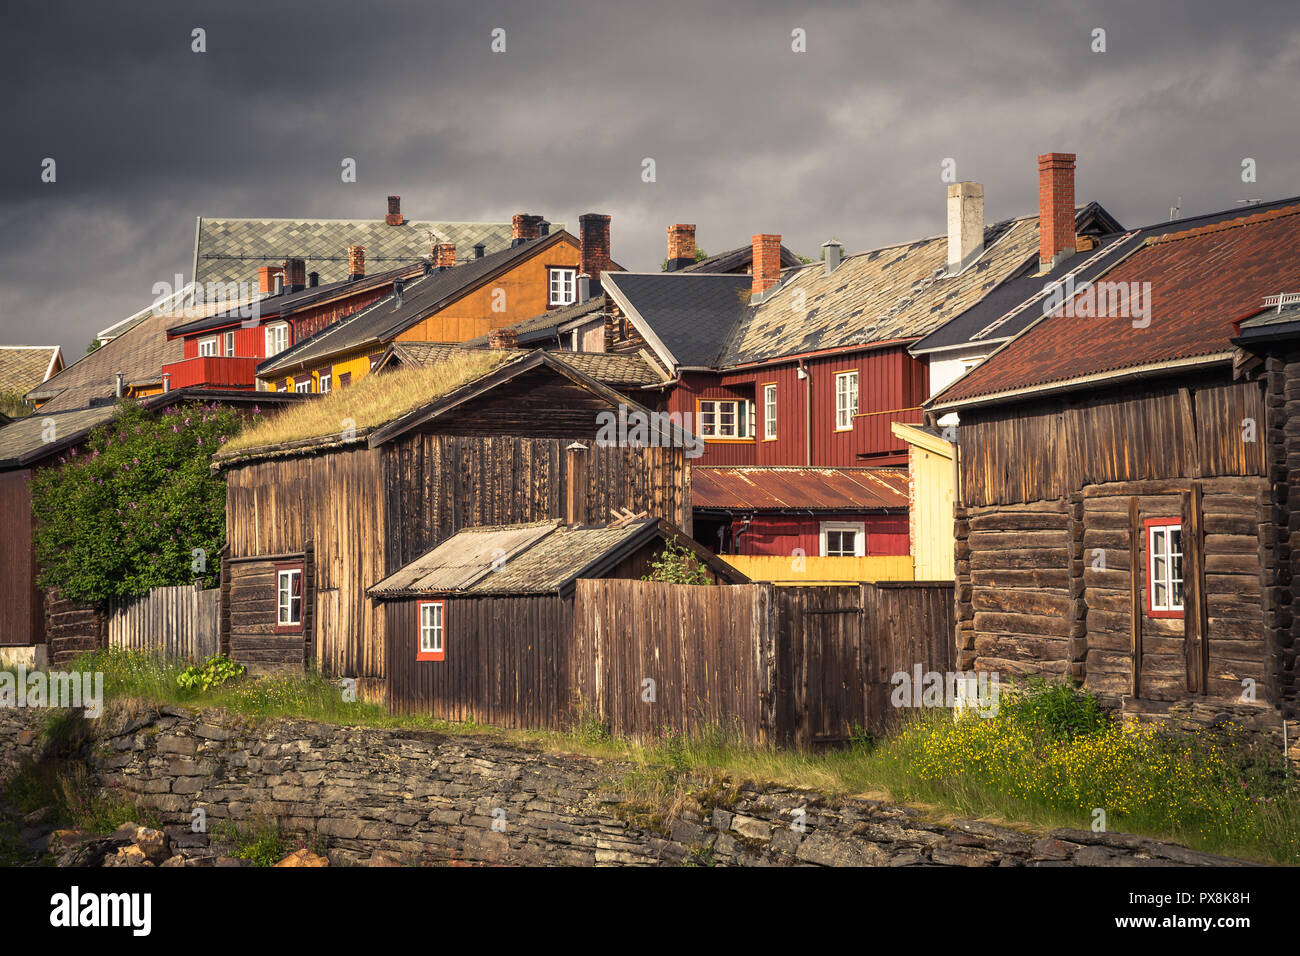 Bergbaustadt Røros in Norwegen, fantastische original alten norwegischen Stadt, als UNESCO-Weltkulturerbe. Traditionelle Holzarchitektur. Stockfoto